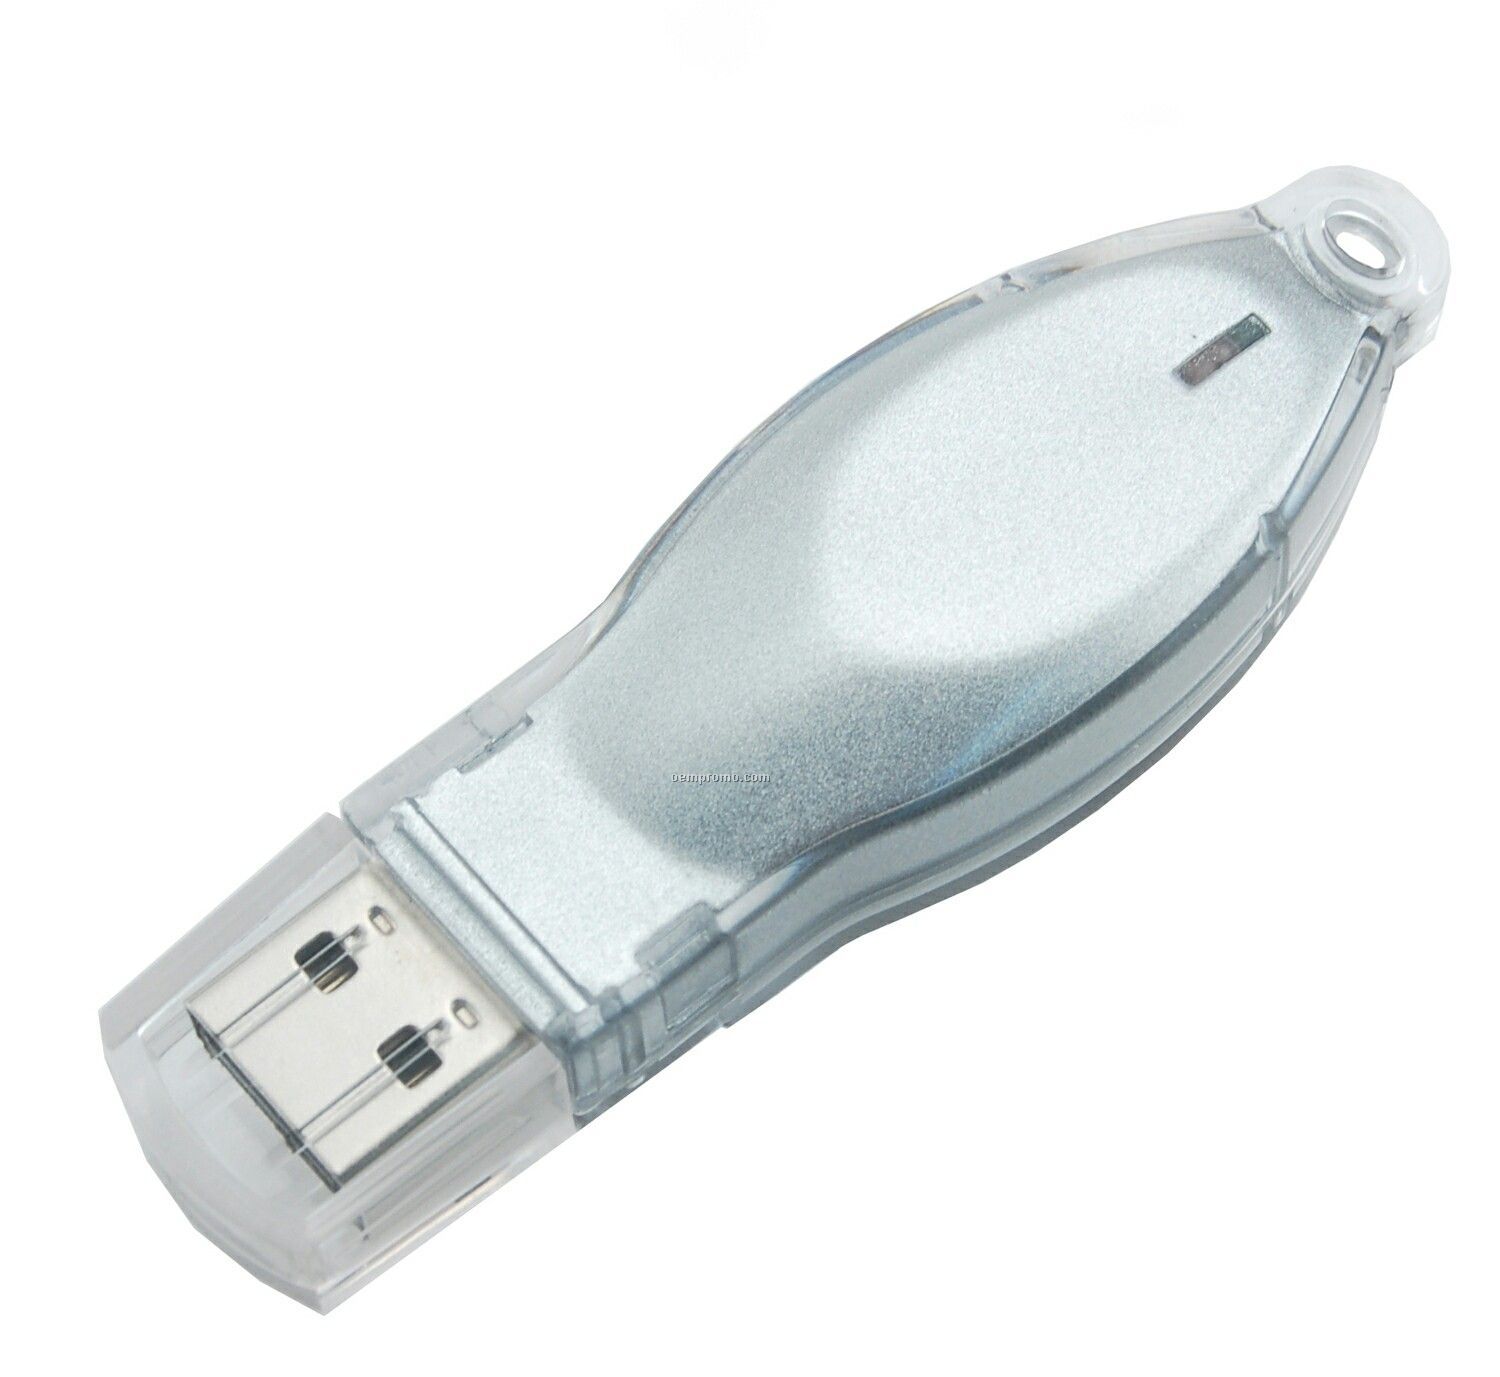 4 Gb Mosaic 200 Series USB Drive